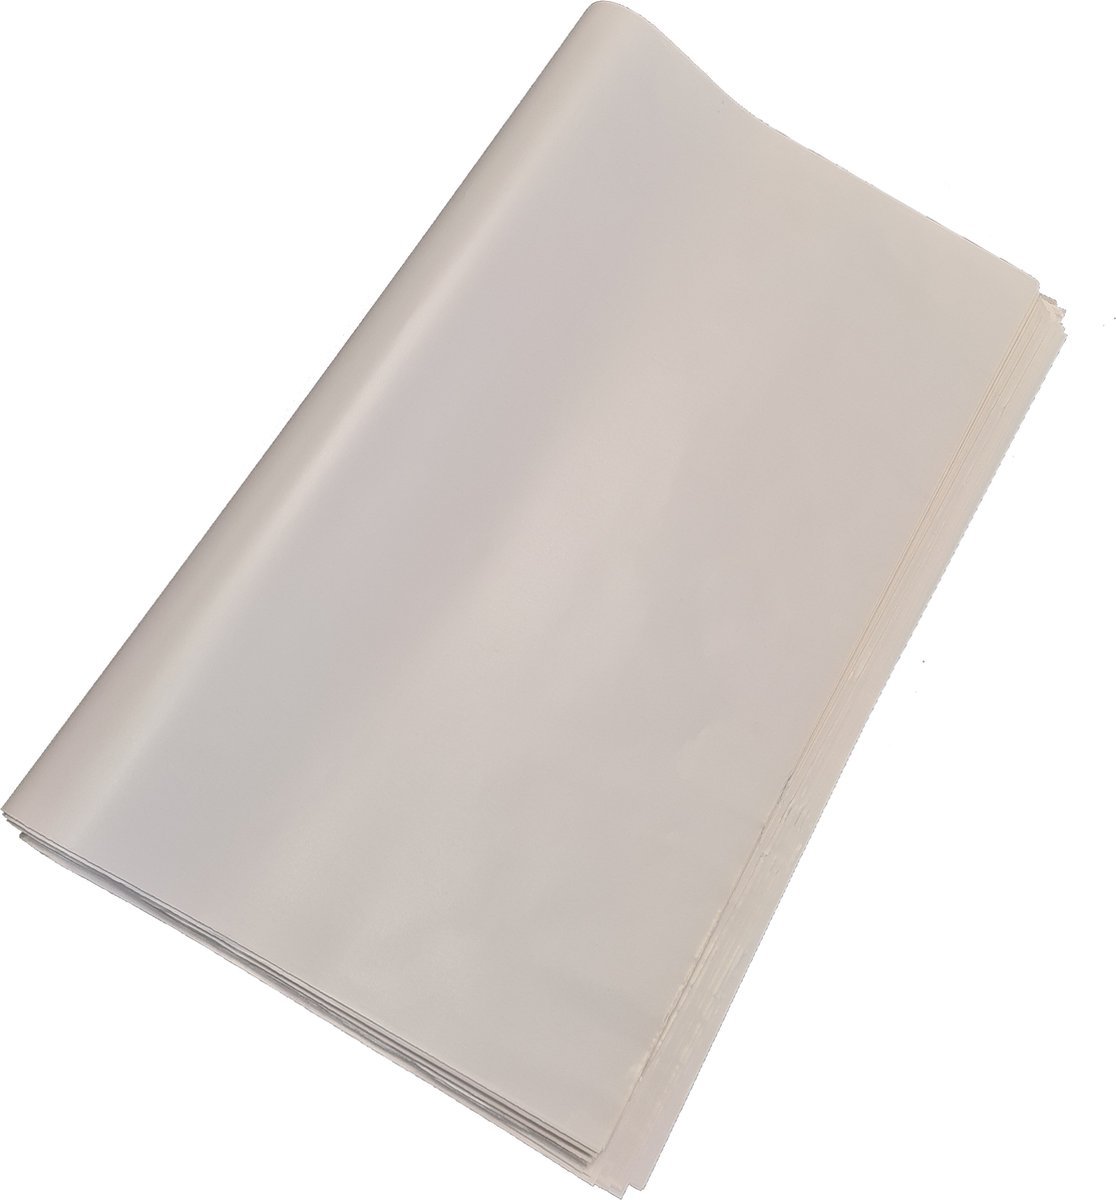 Sterk inpakpapier 5kg - 500 vel inpakpapier - Professioneel vloeipapier - Sterk verhuispapier - Verhuizen - Bescherm uw producten met verhuizen/opslag - Verhuisdozenstore